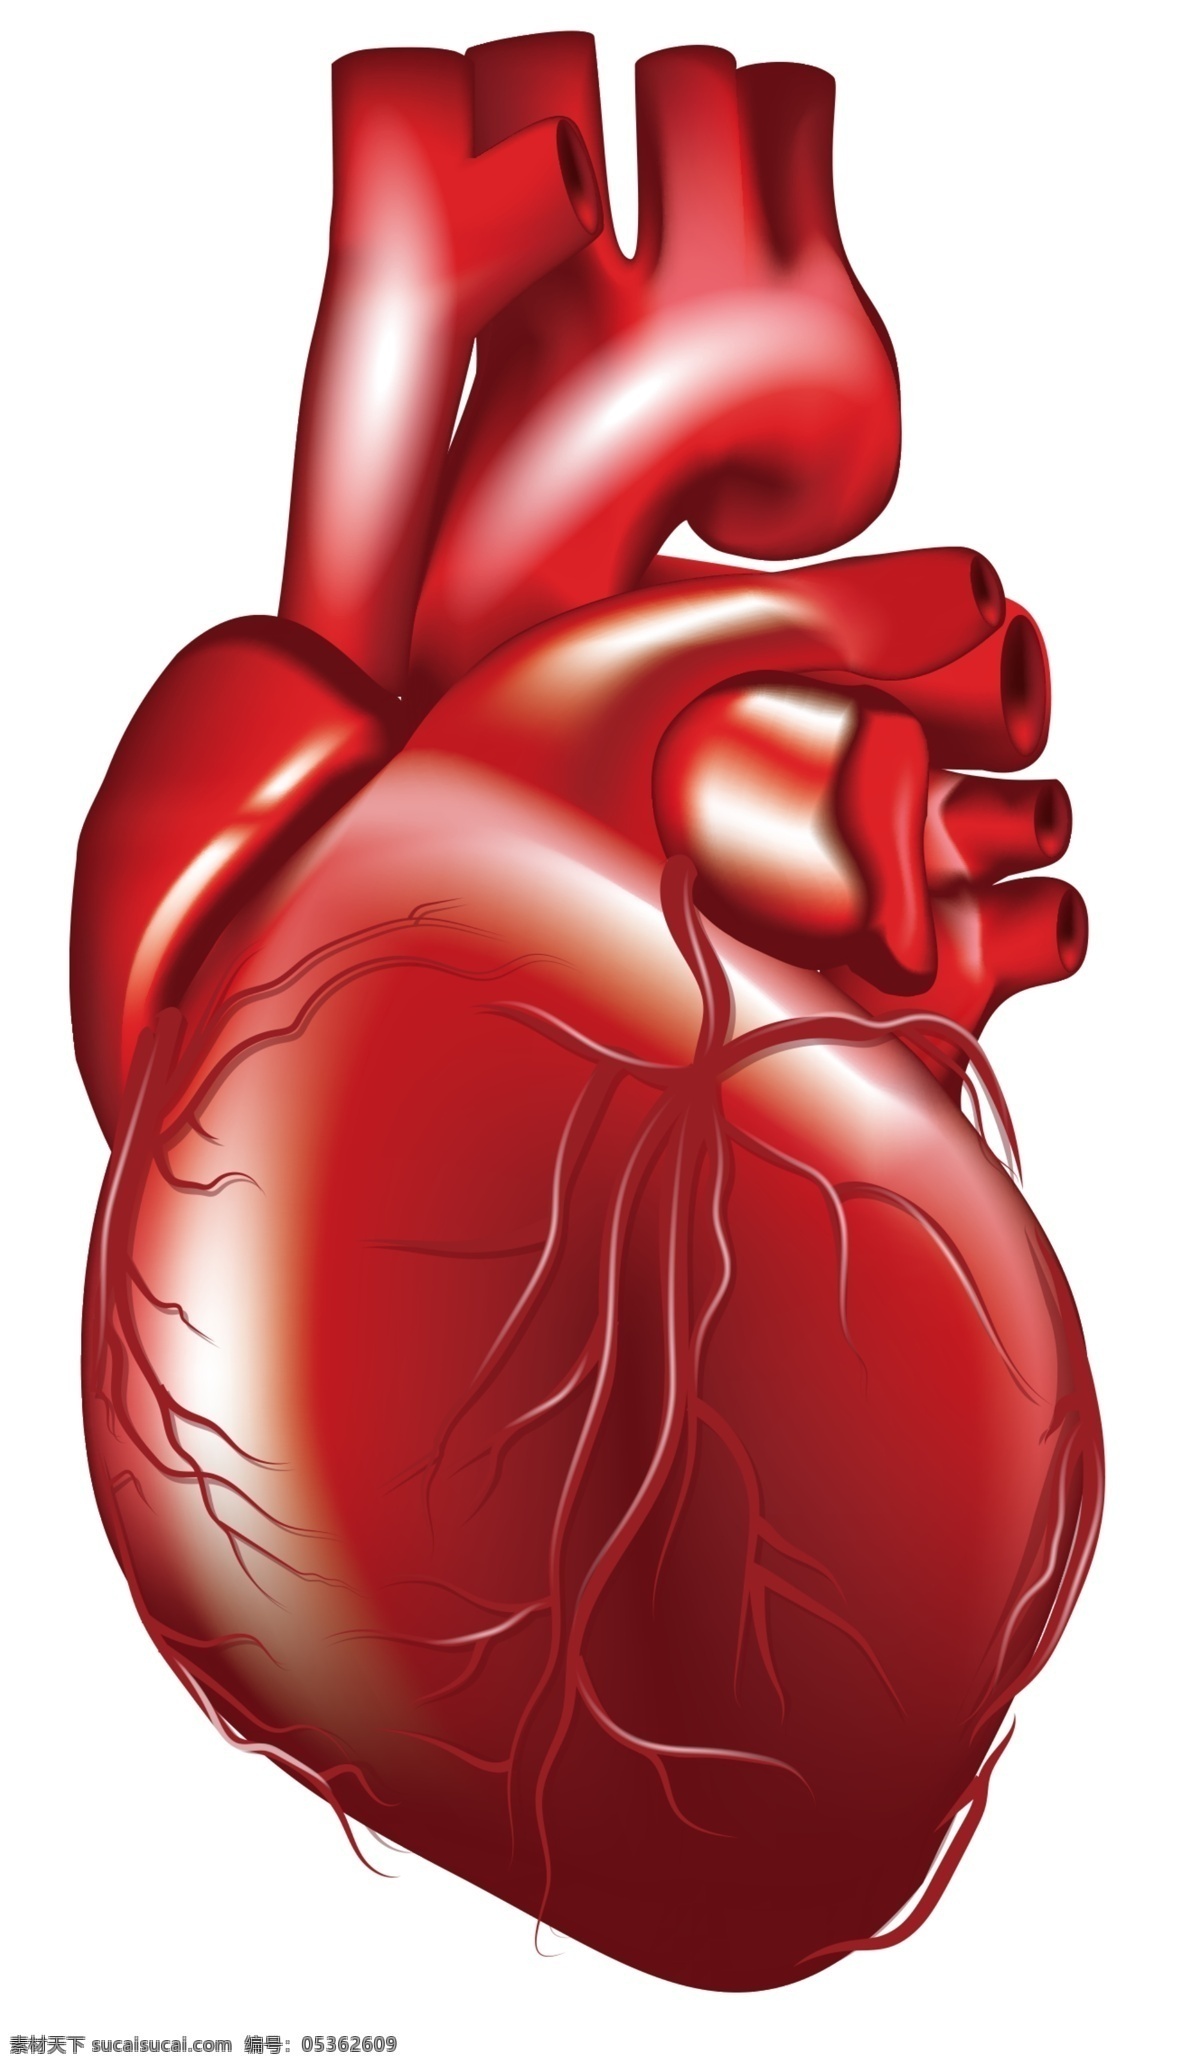 心脏 人体器官 心脏血管 红色心脏 心脏图